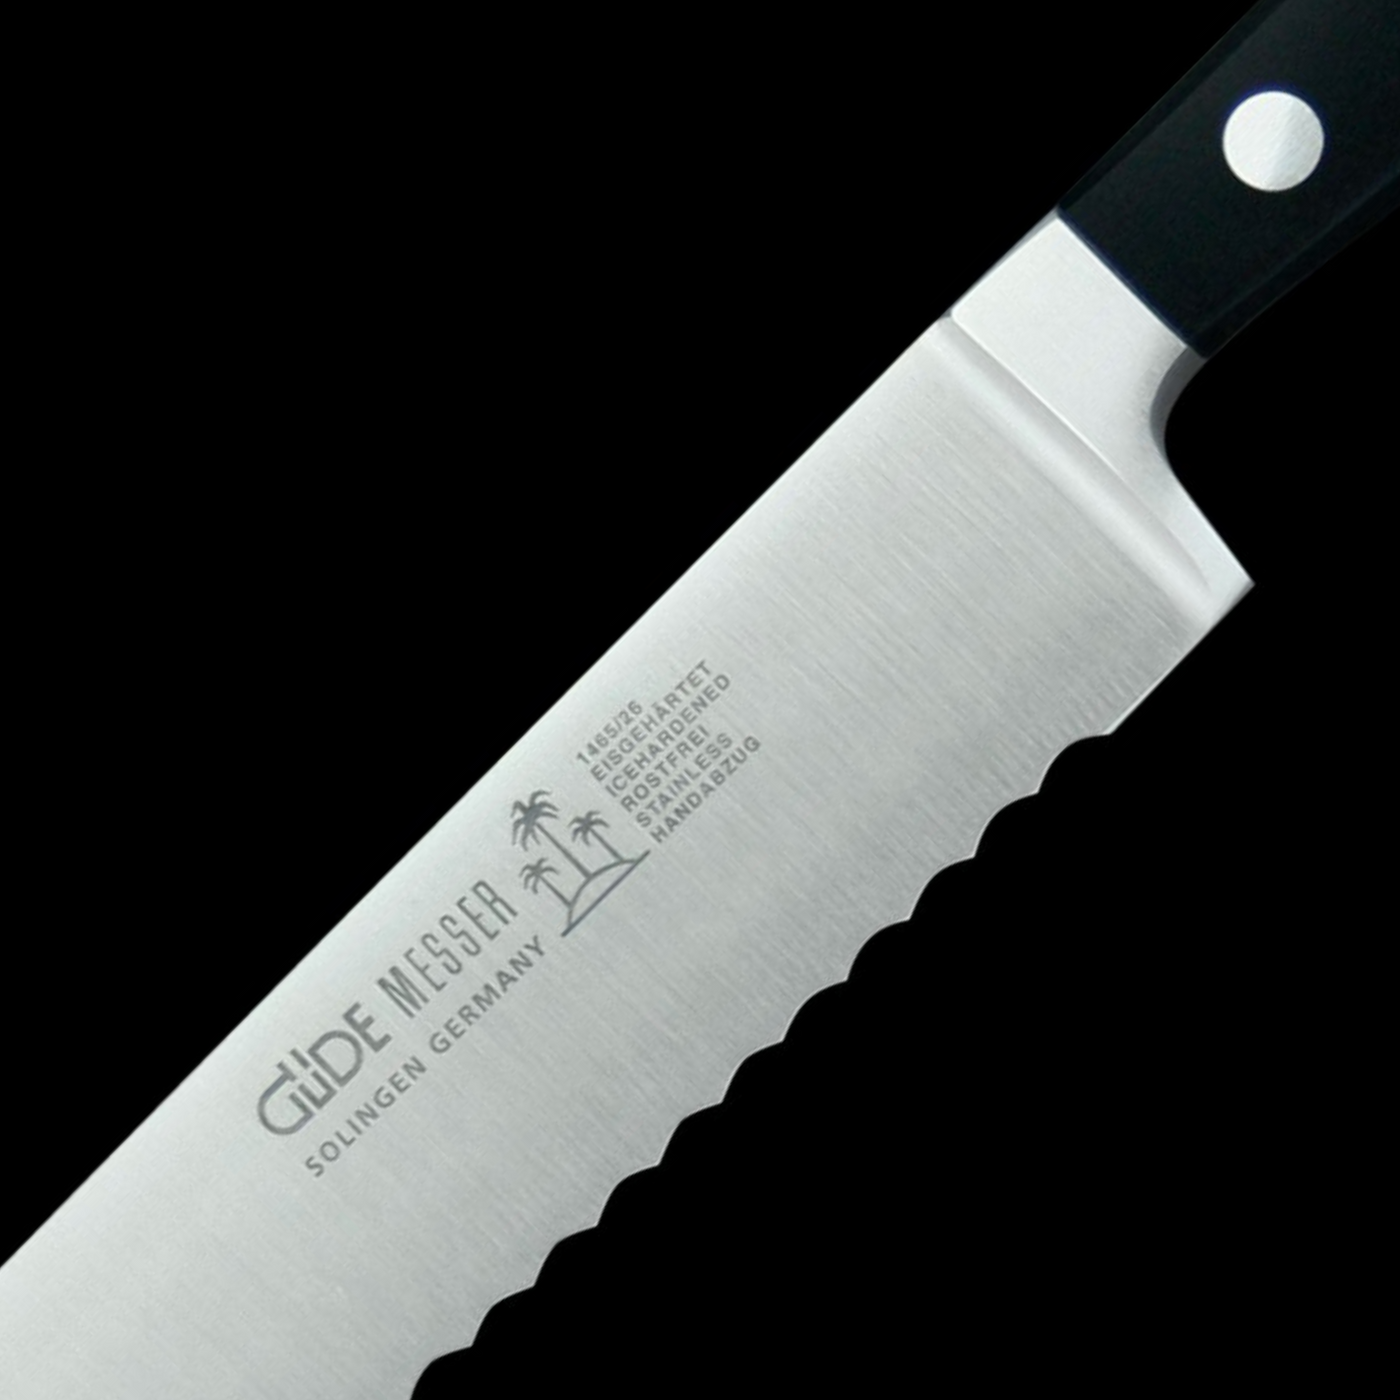 Gude Alpha Serrated Slicer/Roast Beef Knife With Black Hostaform Handle, 10-in - Kitchen Universe